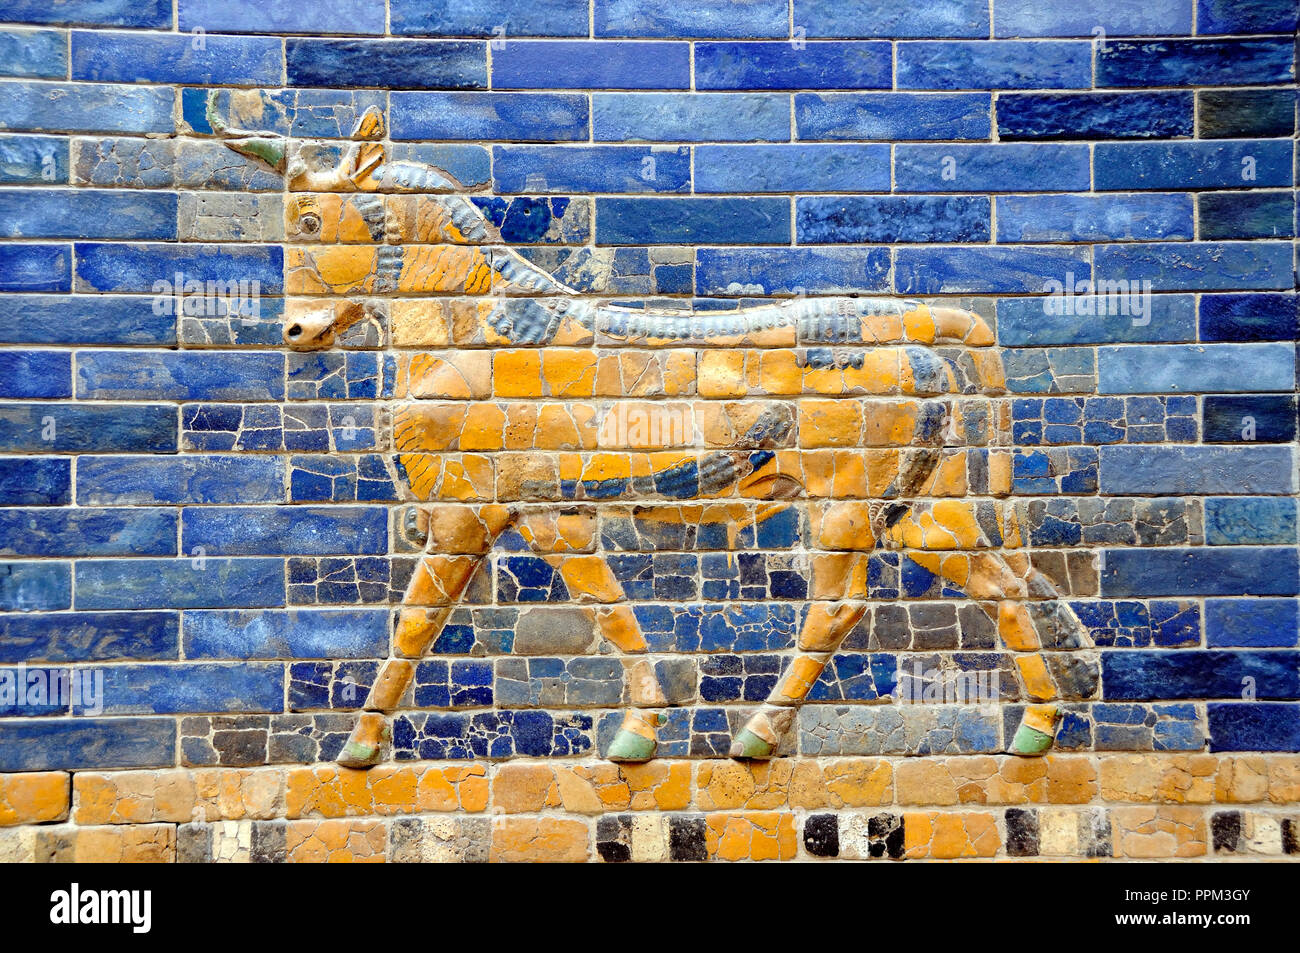 Dettaglio della Ishtar Gate, Babilonia. Pergamonmuseum. Berlino, Germania Foto Stock